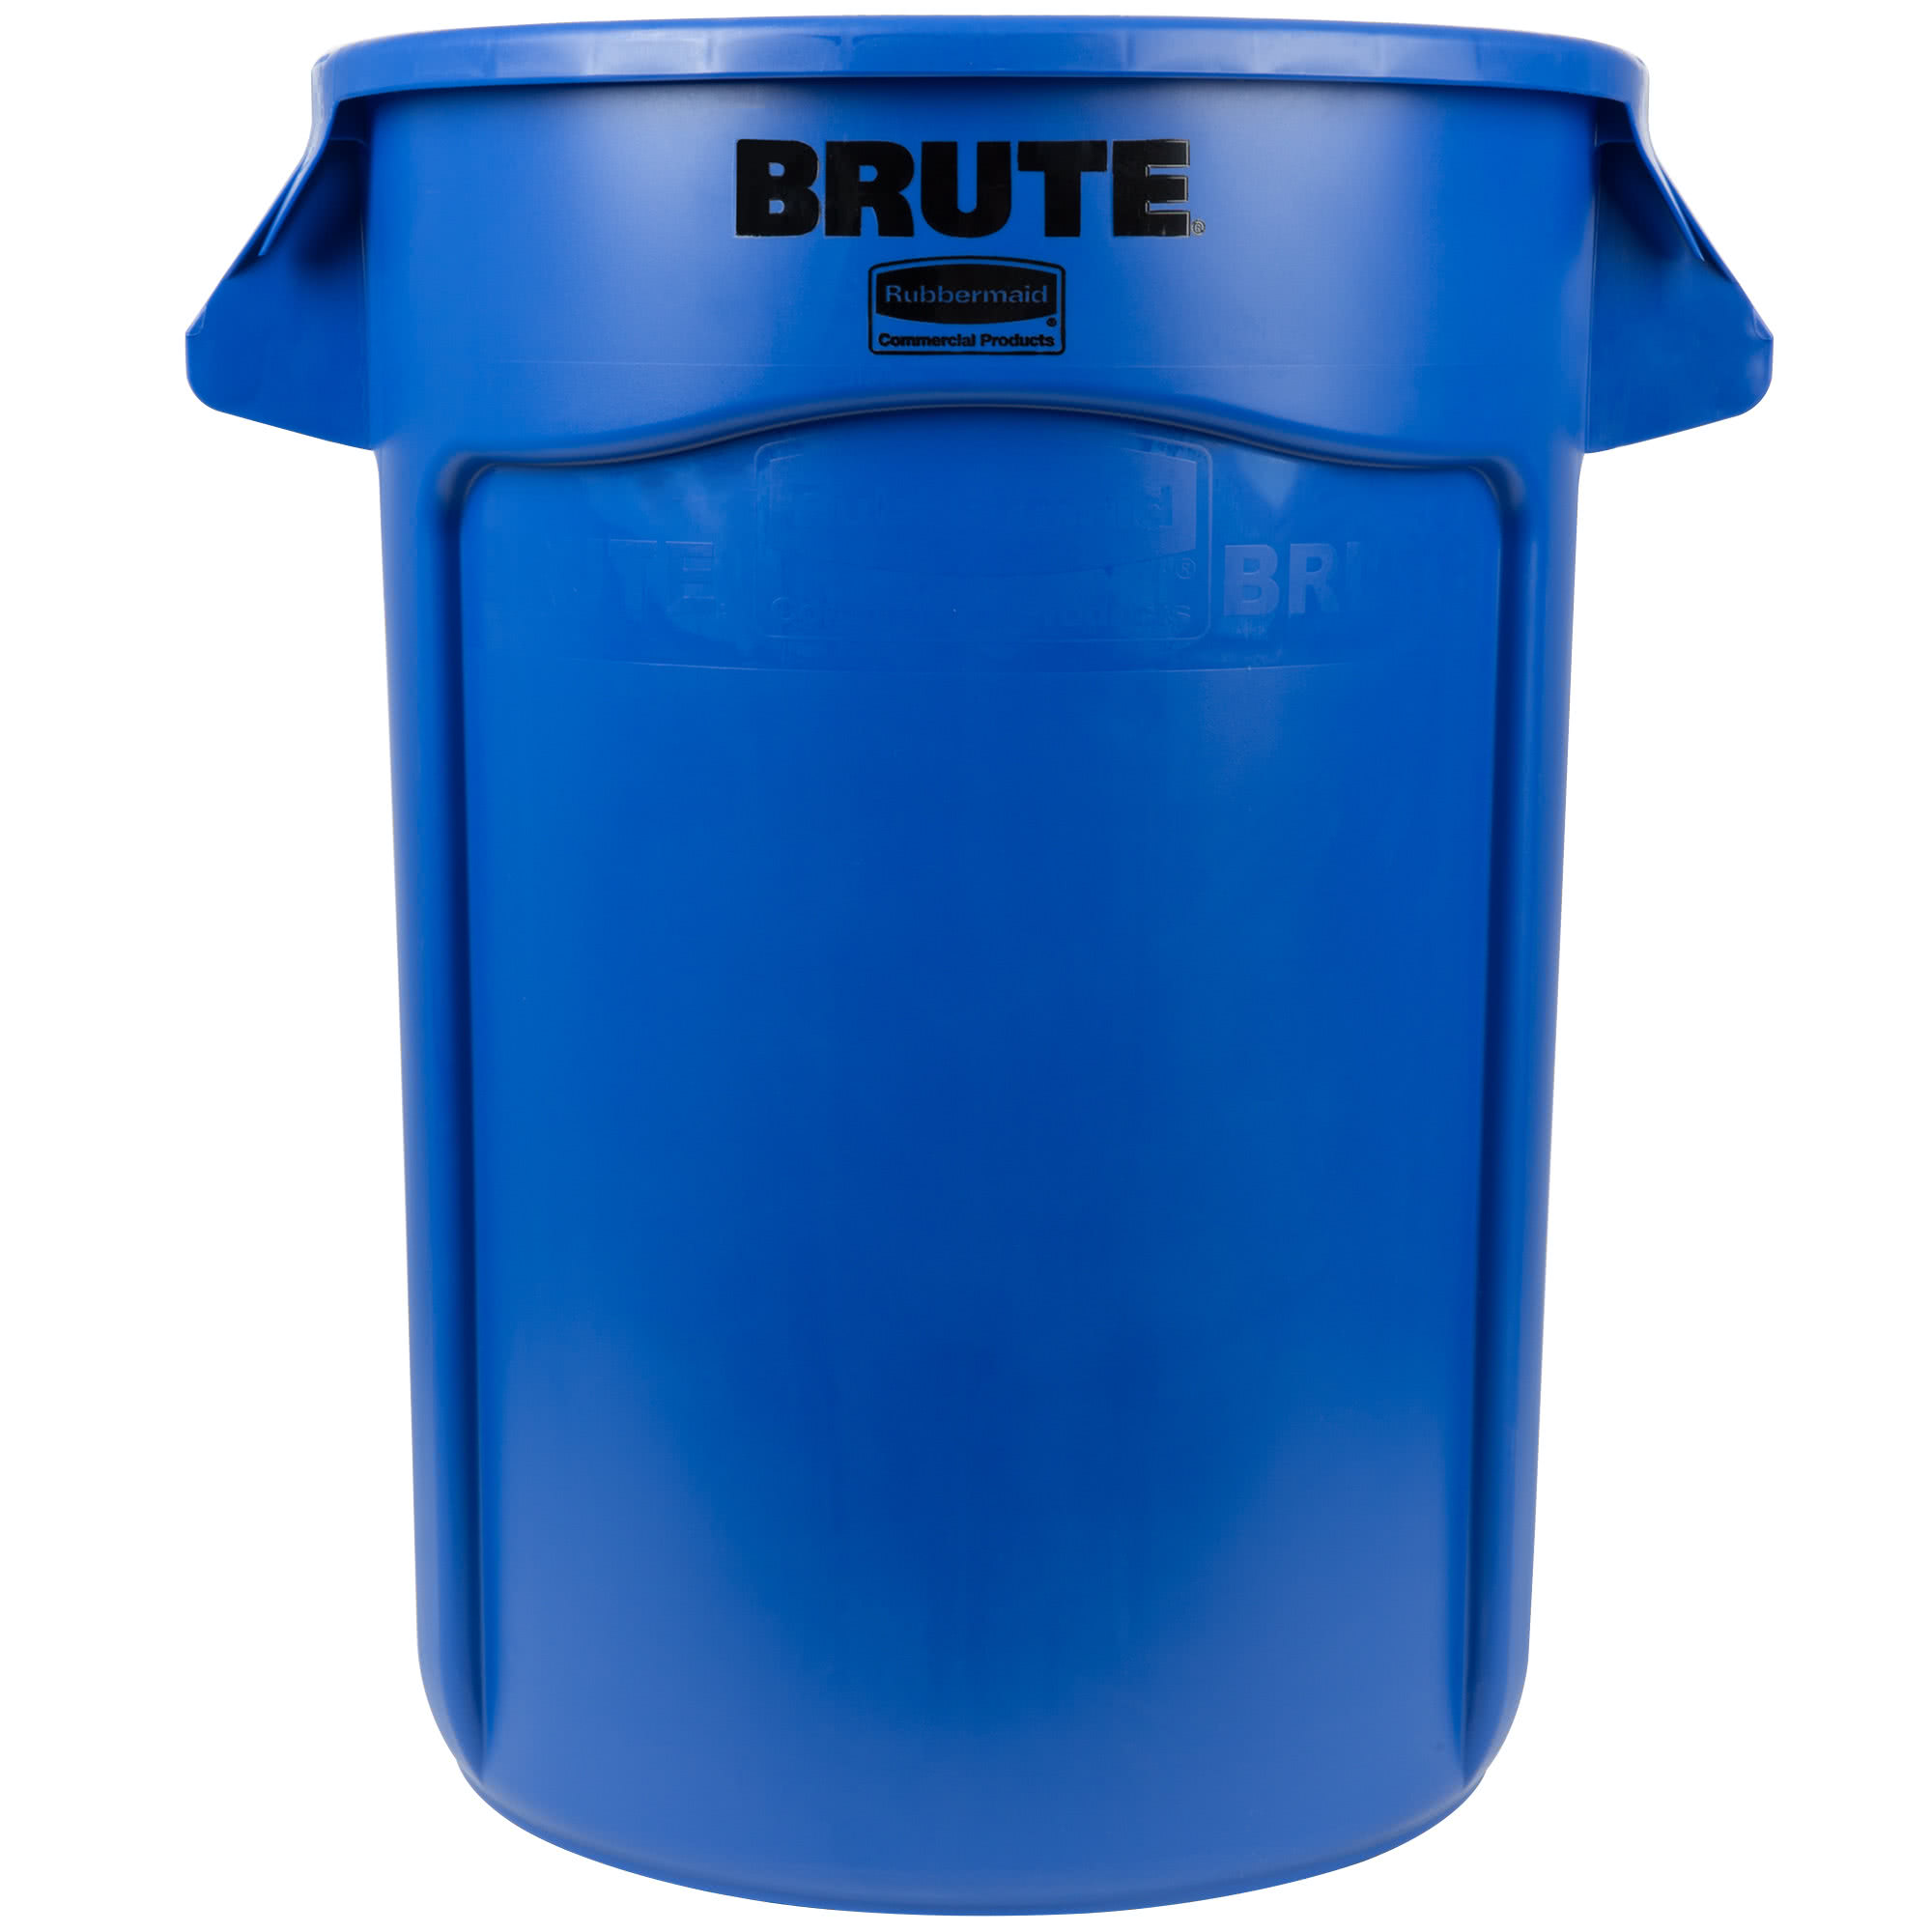 Rubbermaid FG263200BLUE contenedor Brute color azul con capacidad para 32 galones